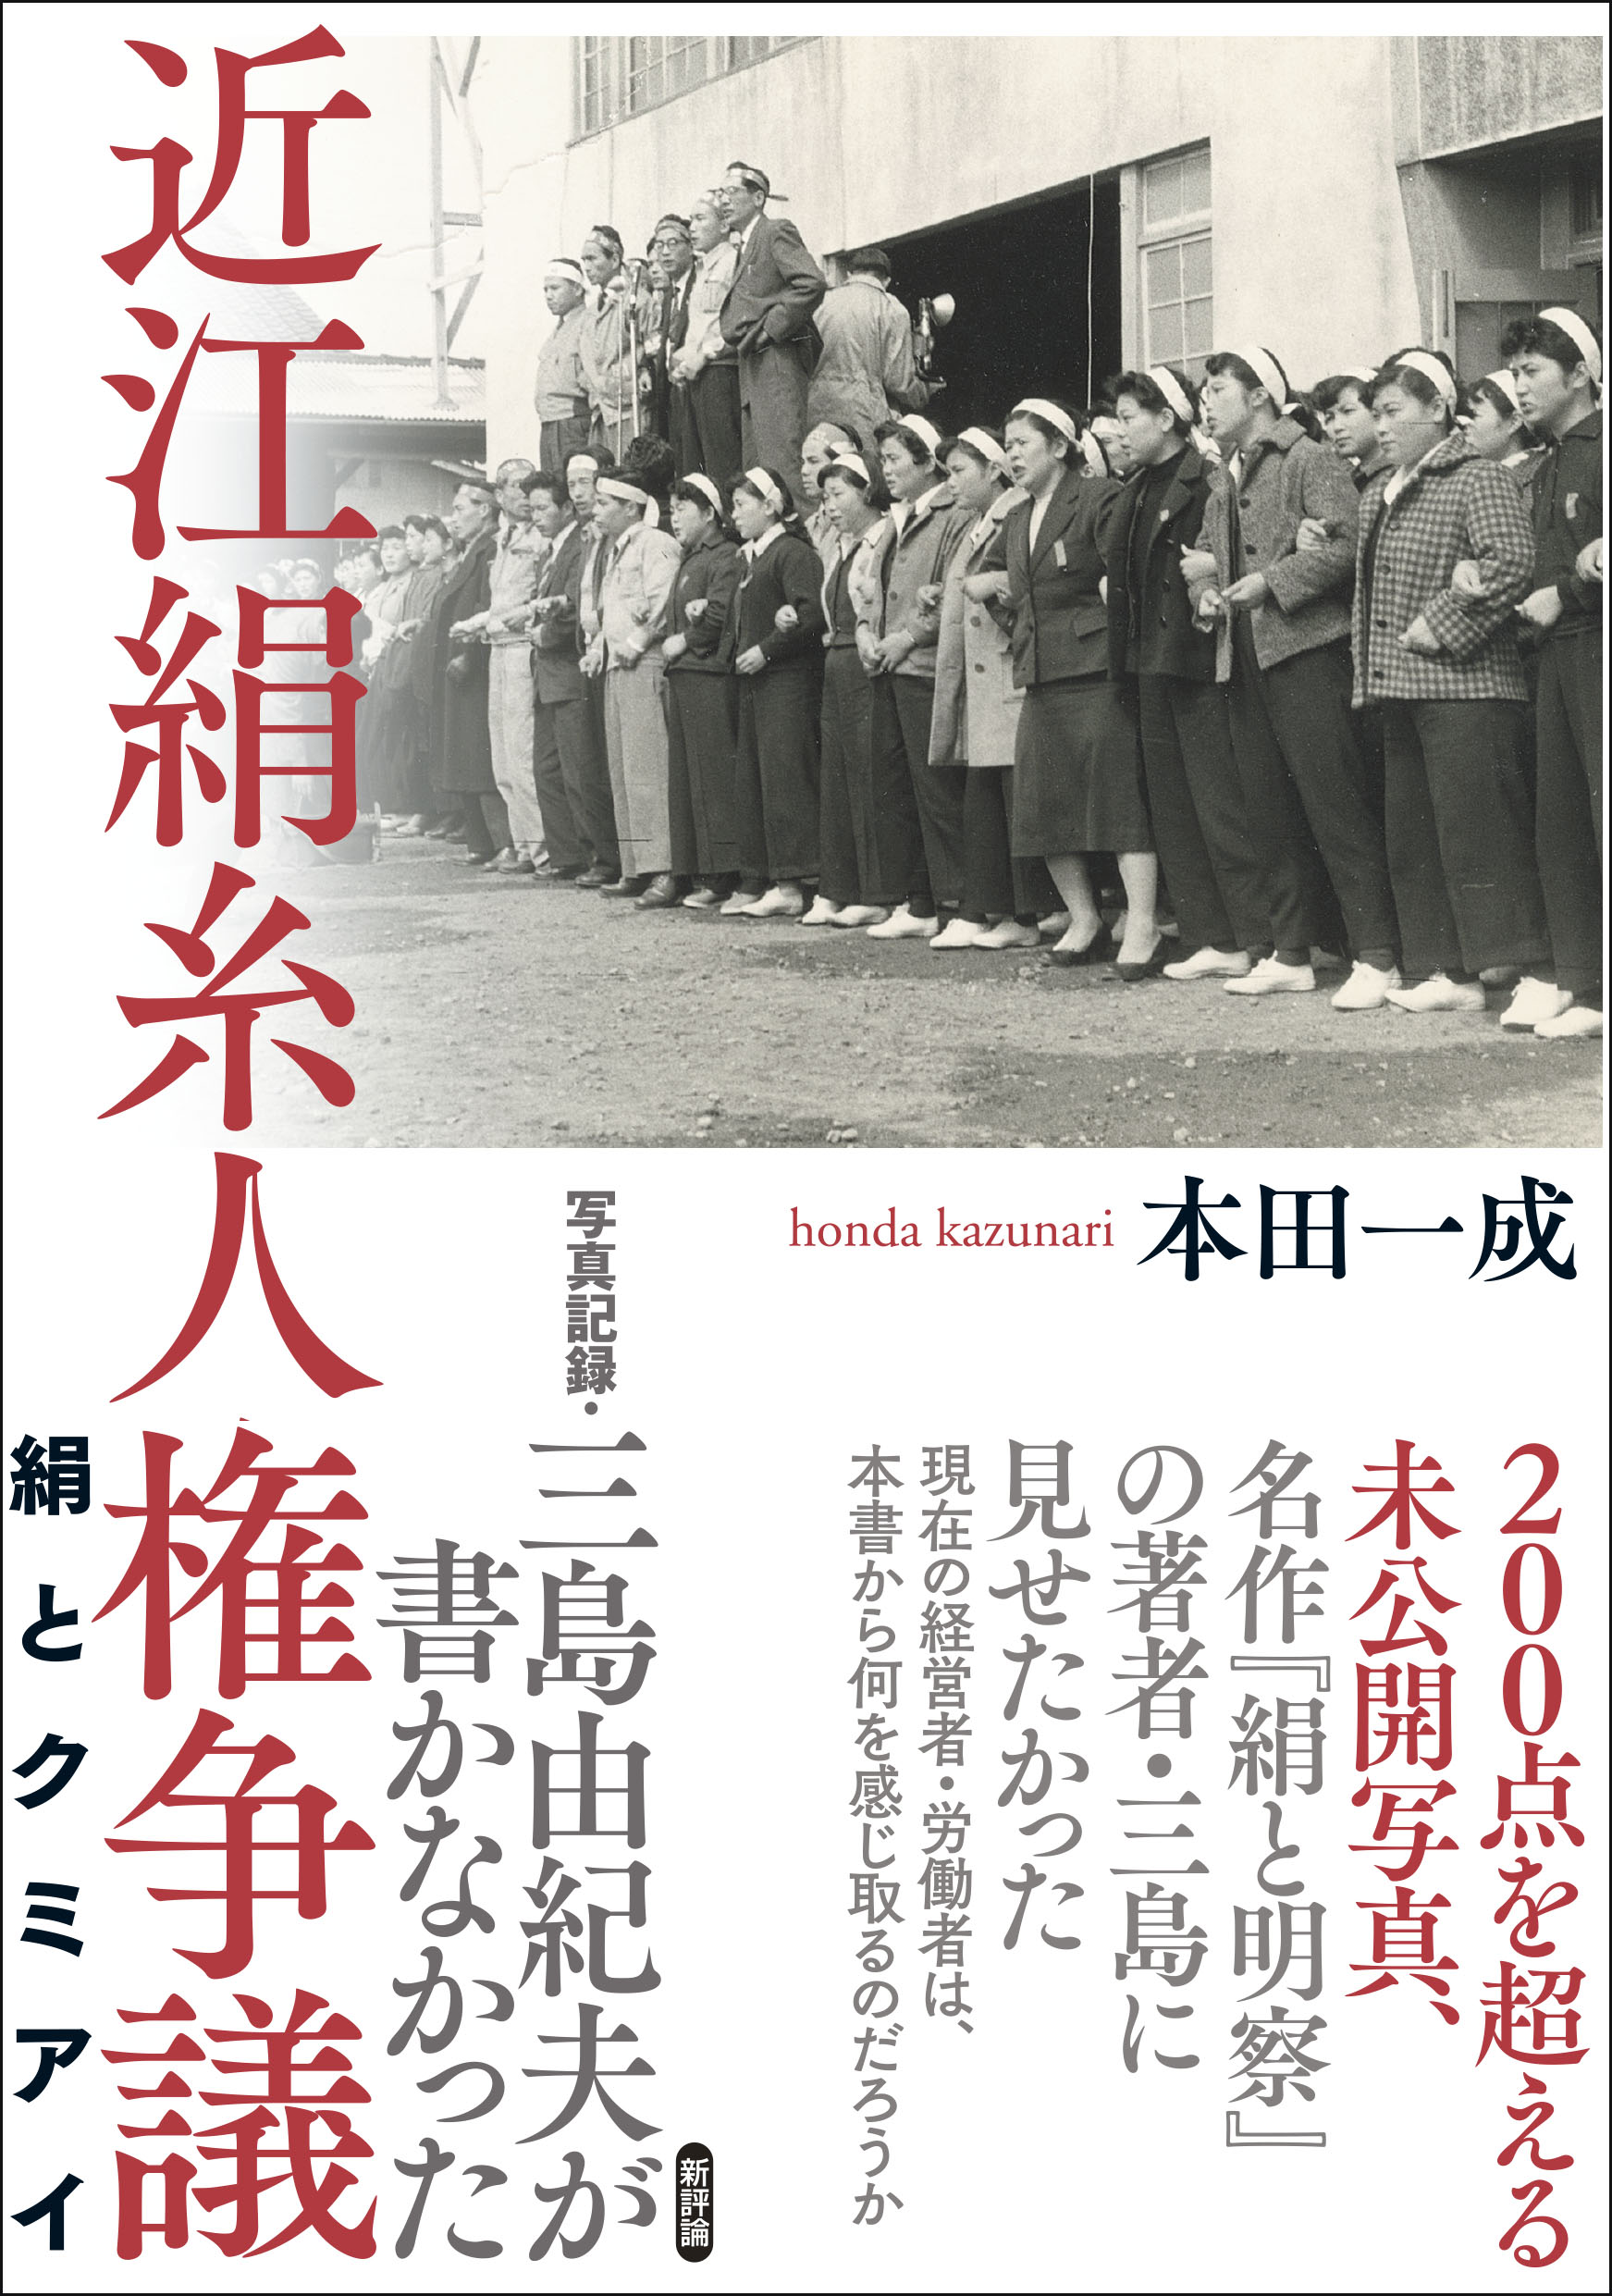 写真記録・三島由紀夫が書かなかった近江絹糸人権争議の商品画像